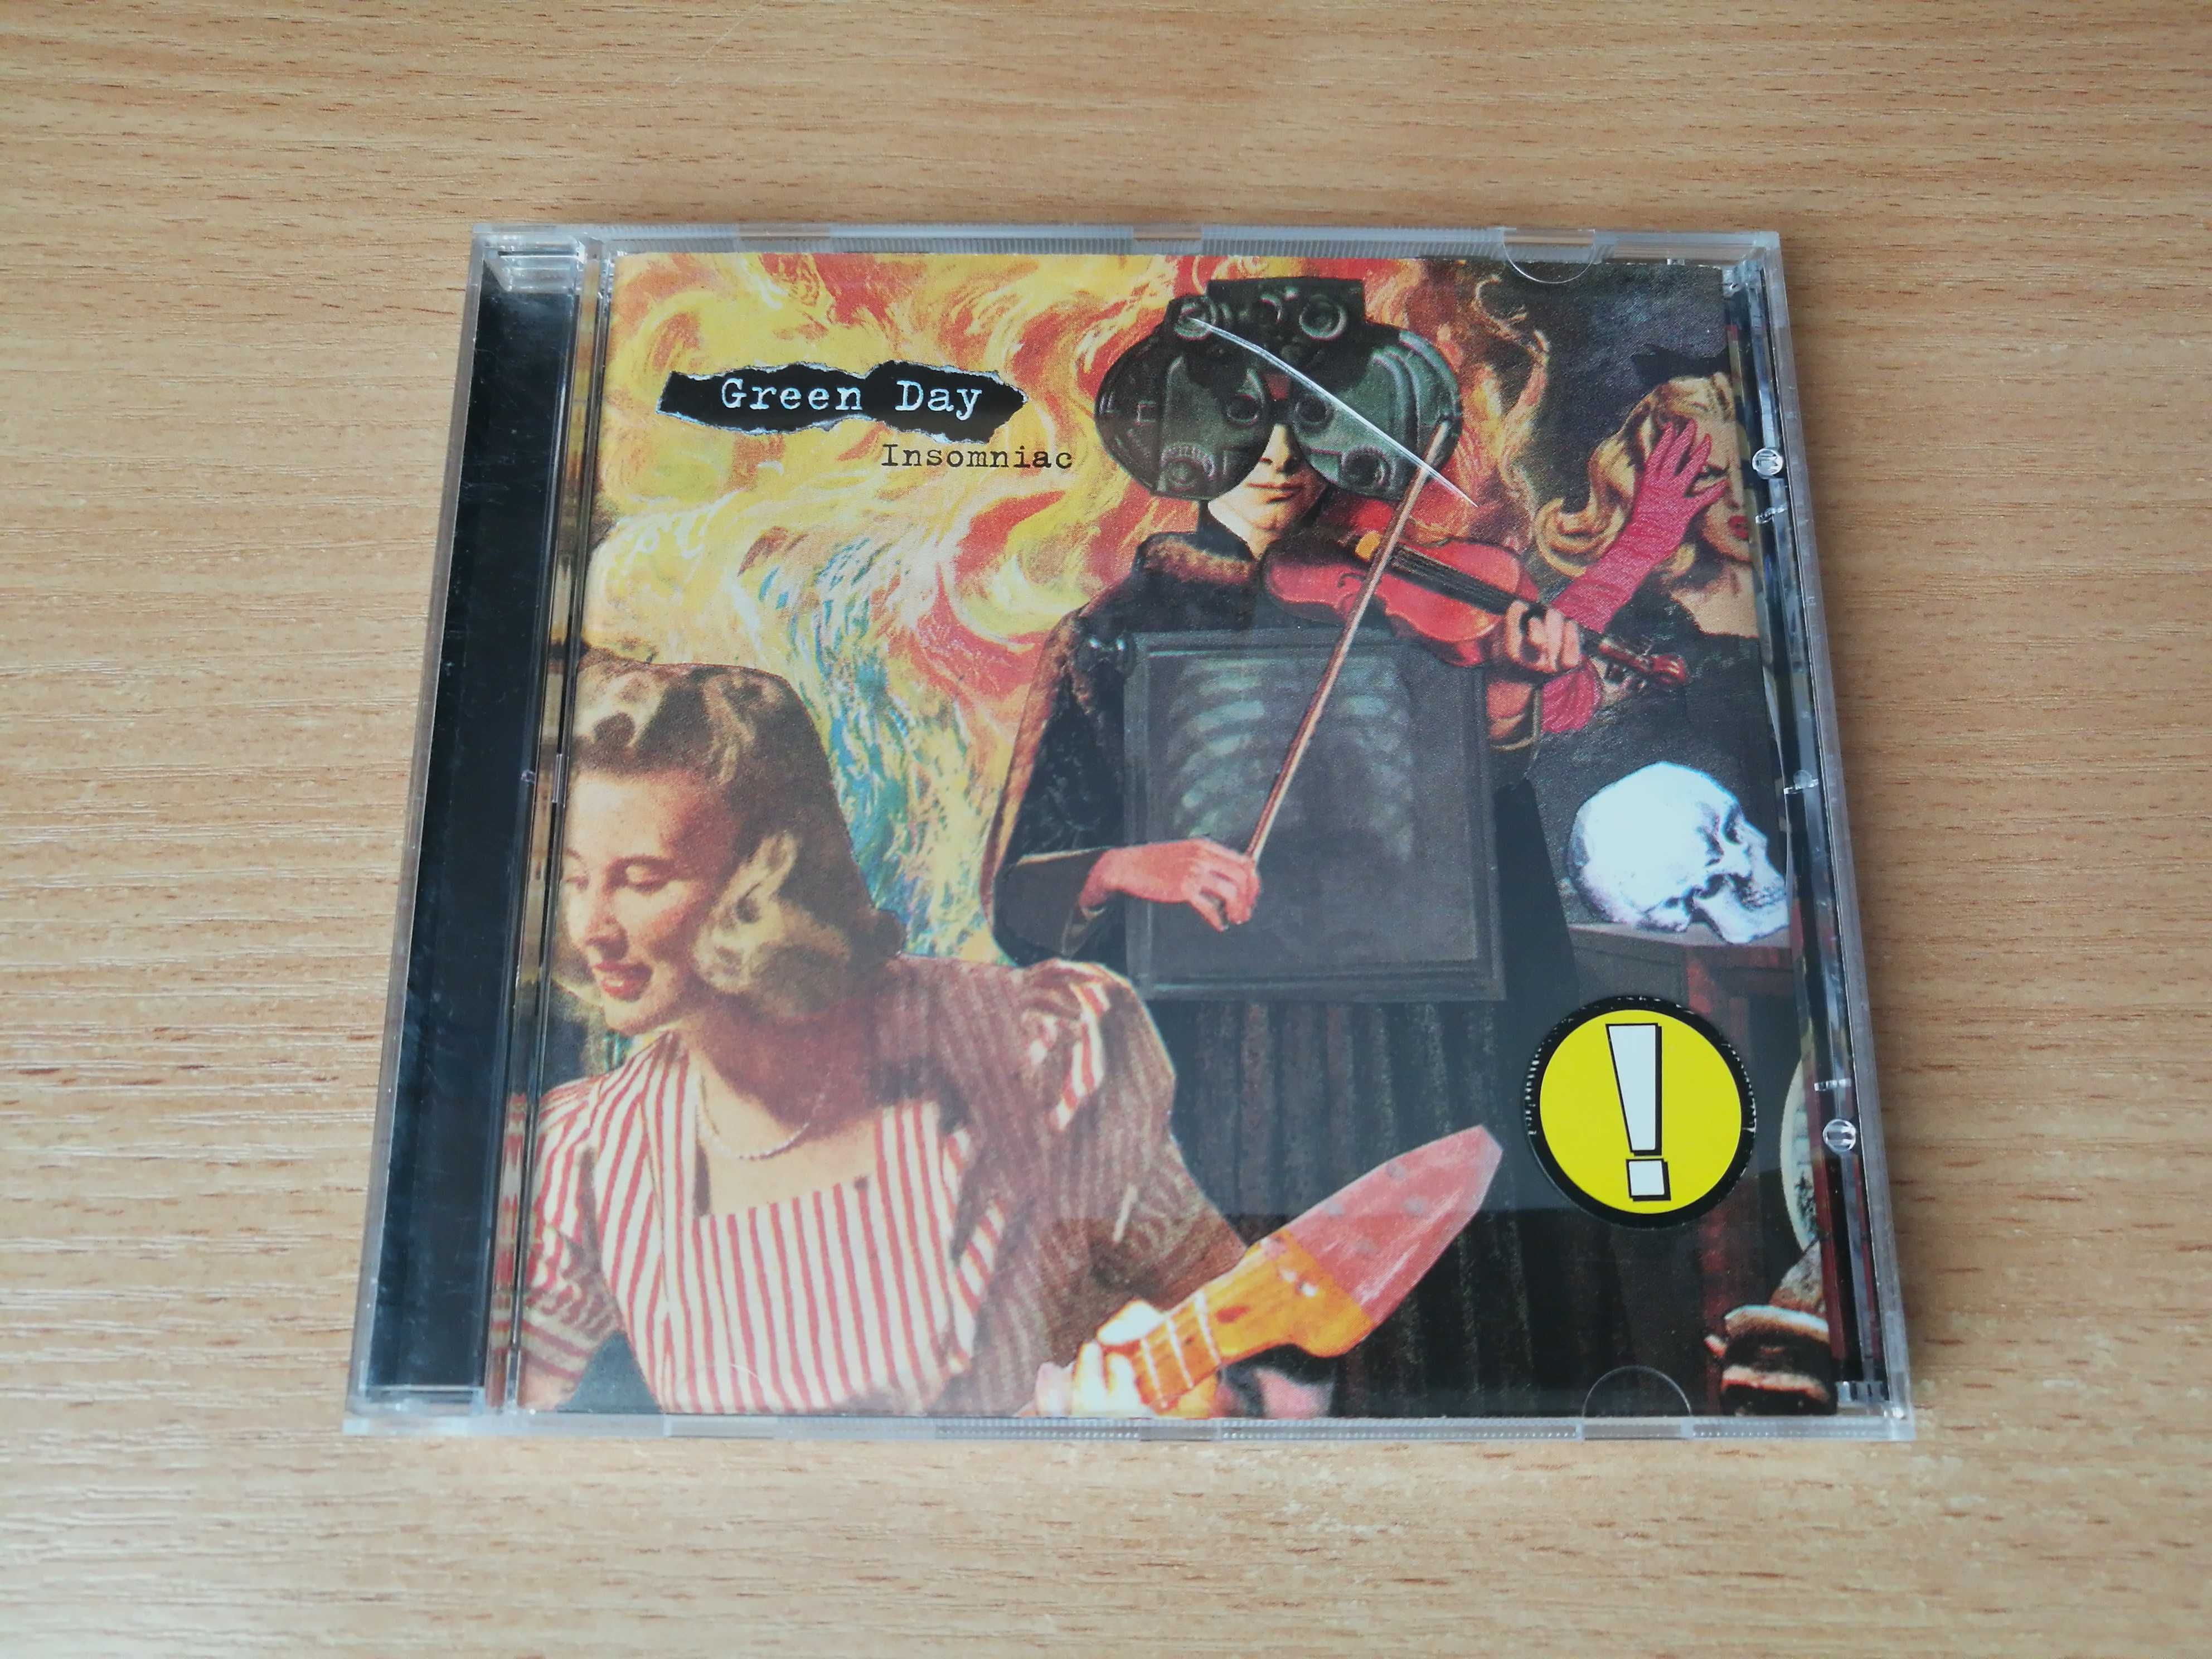 Album CD Green Day "Insomniac"